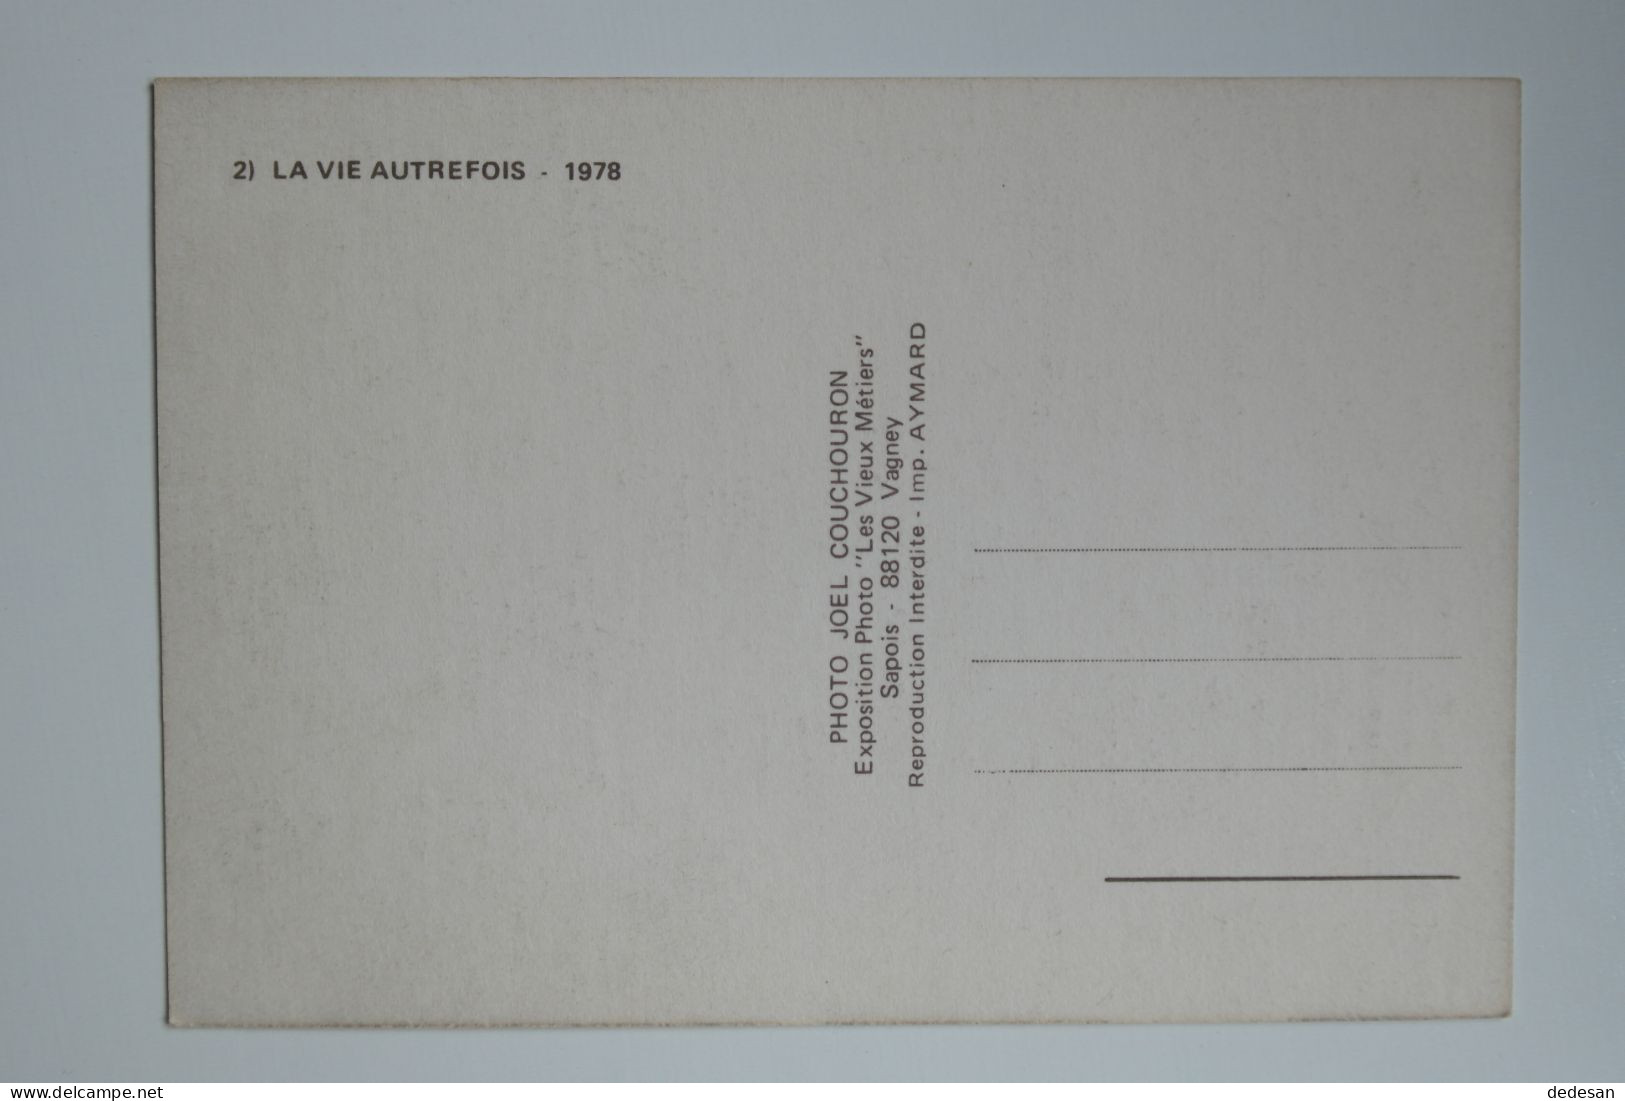 CPSM Grand Format 148x102 2) La Vie Autrefois 1978 Editions Les Vieux Métiers - CHA03 - Farmers